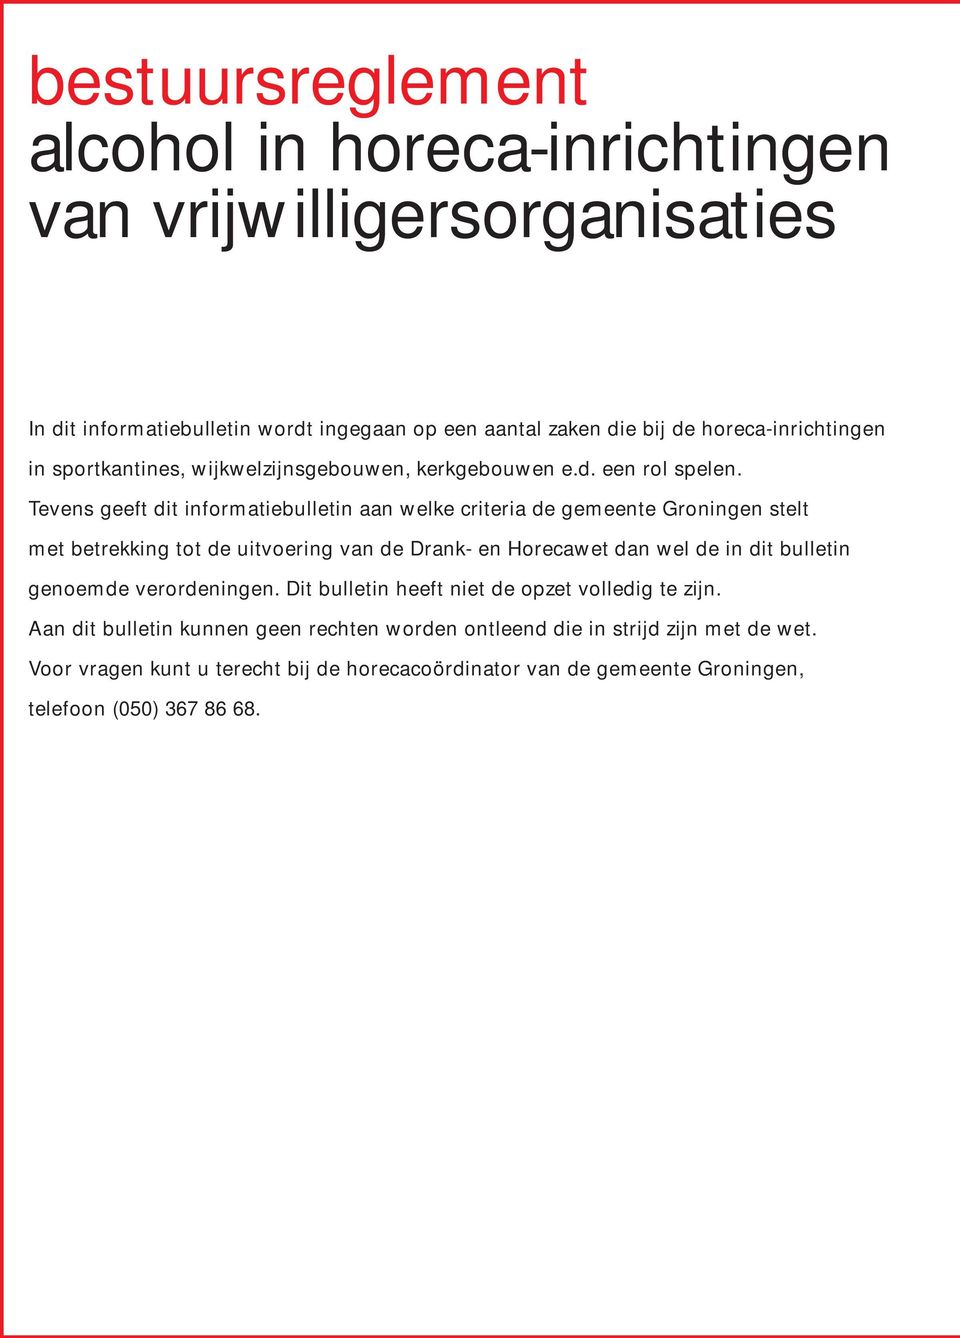 Tevens geeft dit informatiebulletin aan welke criteria de gemeente Groningen stelt met betrekking tot de uitvoering van de Drank- en Horecawet dan wel de in dit bulletin